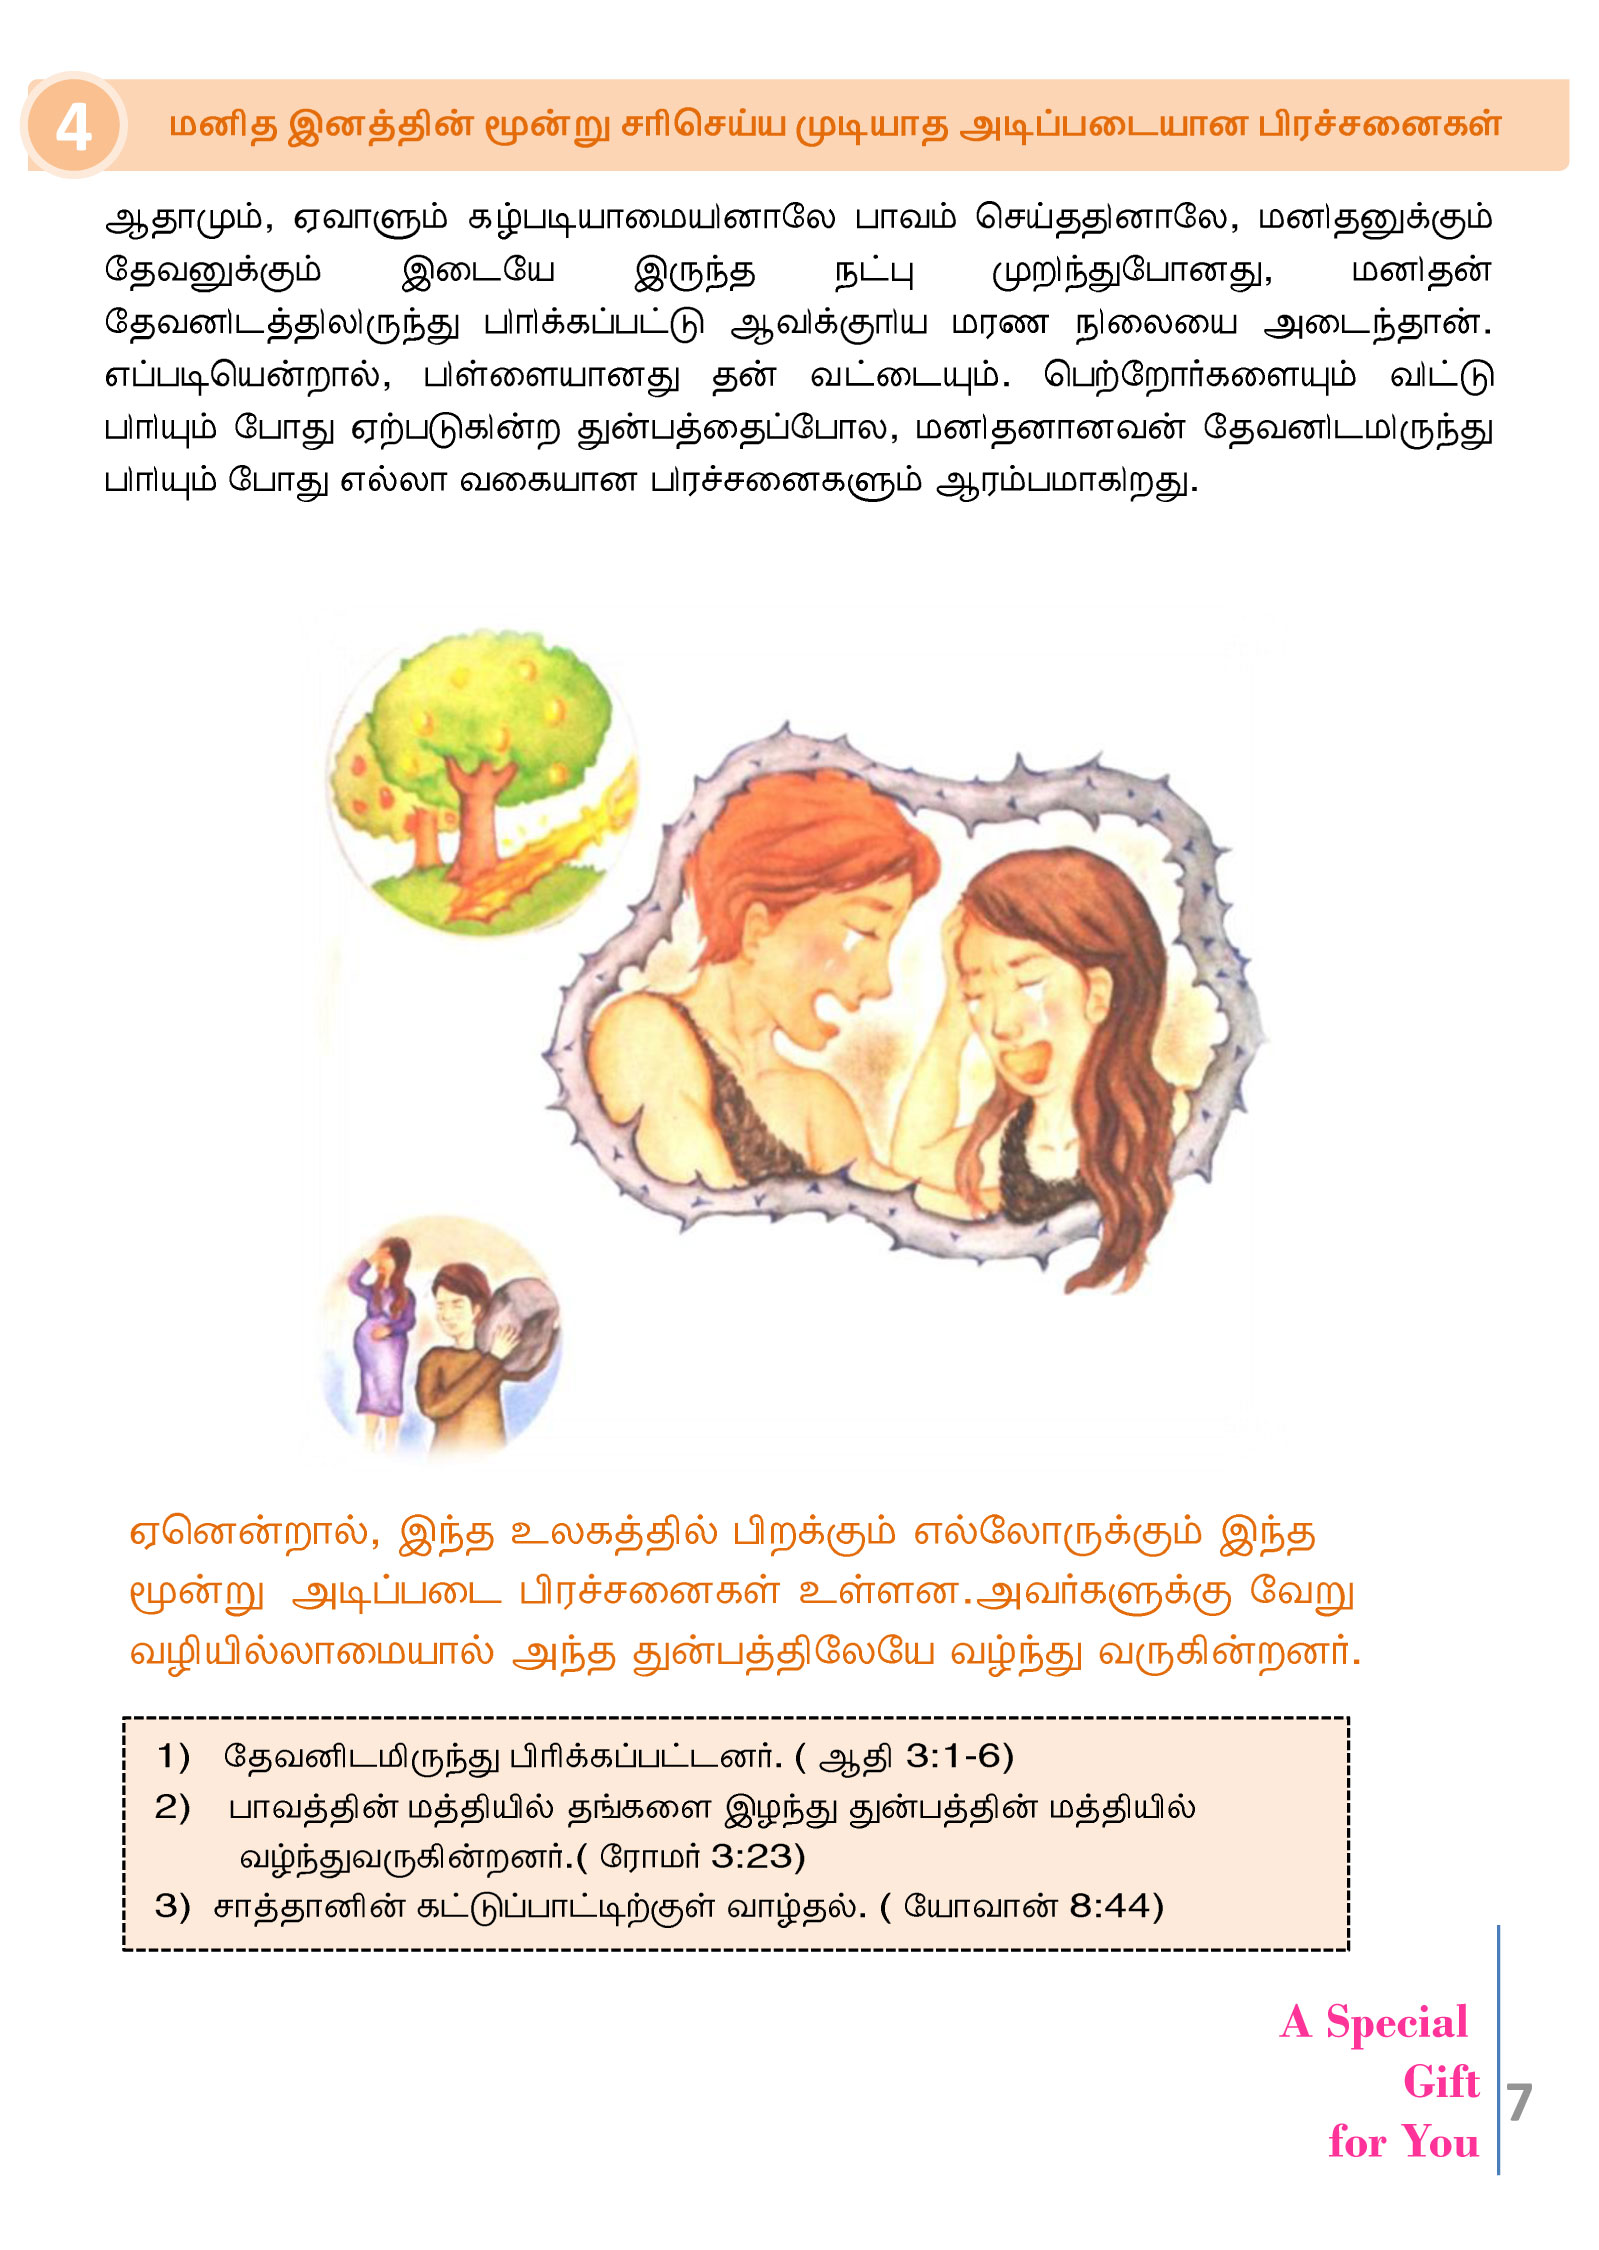 Tamil-Evangelism-Book-Pdf-3-07.jpg